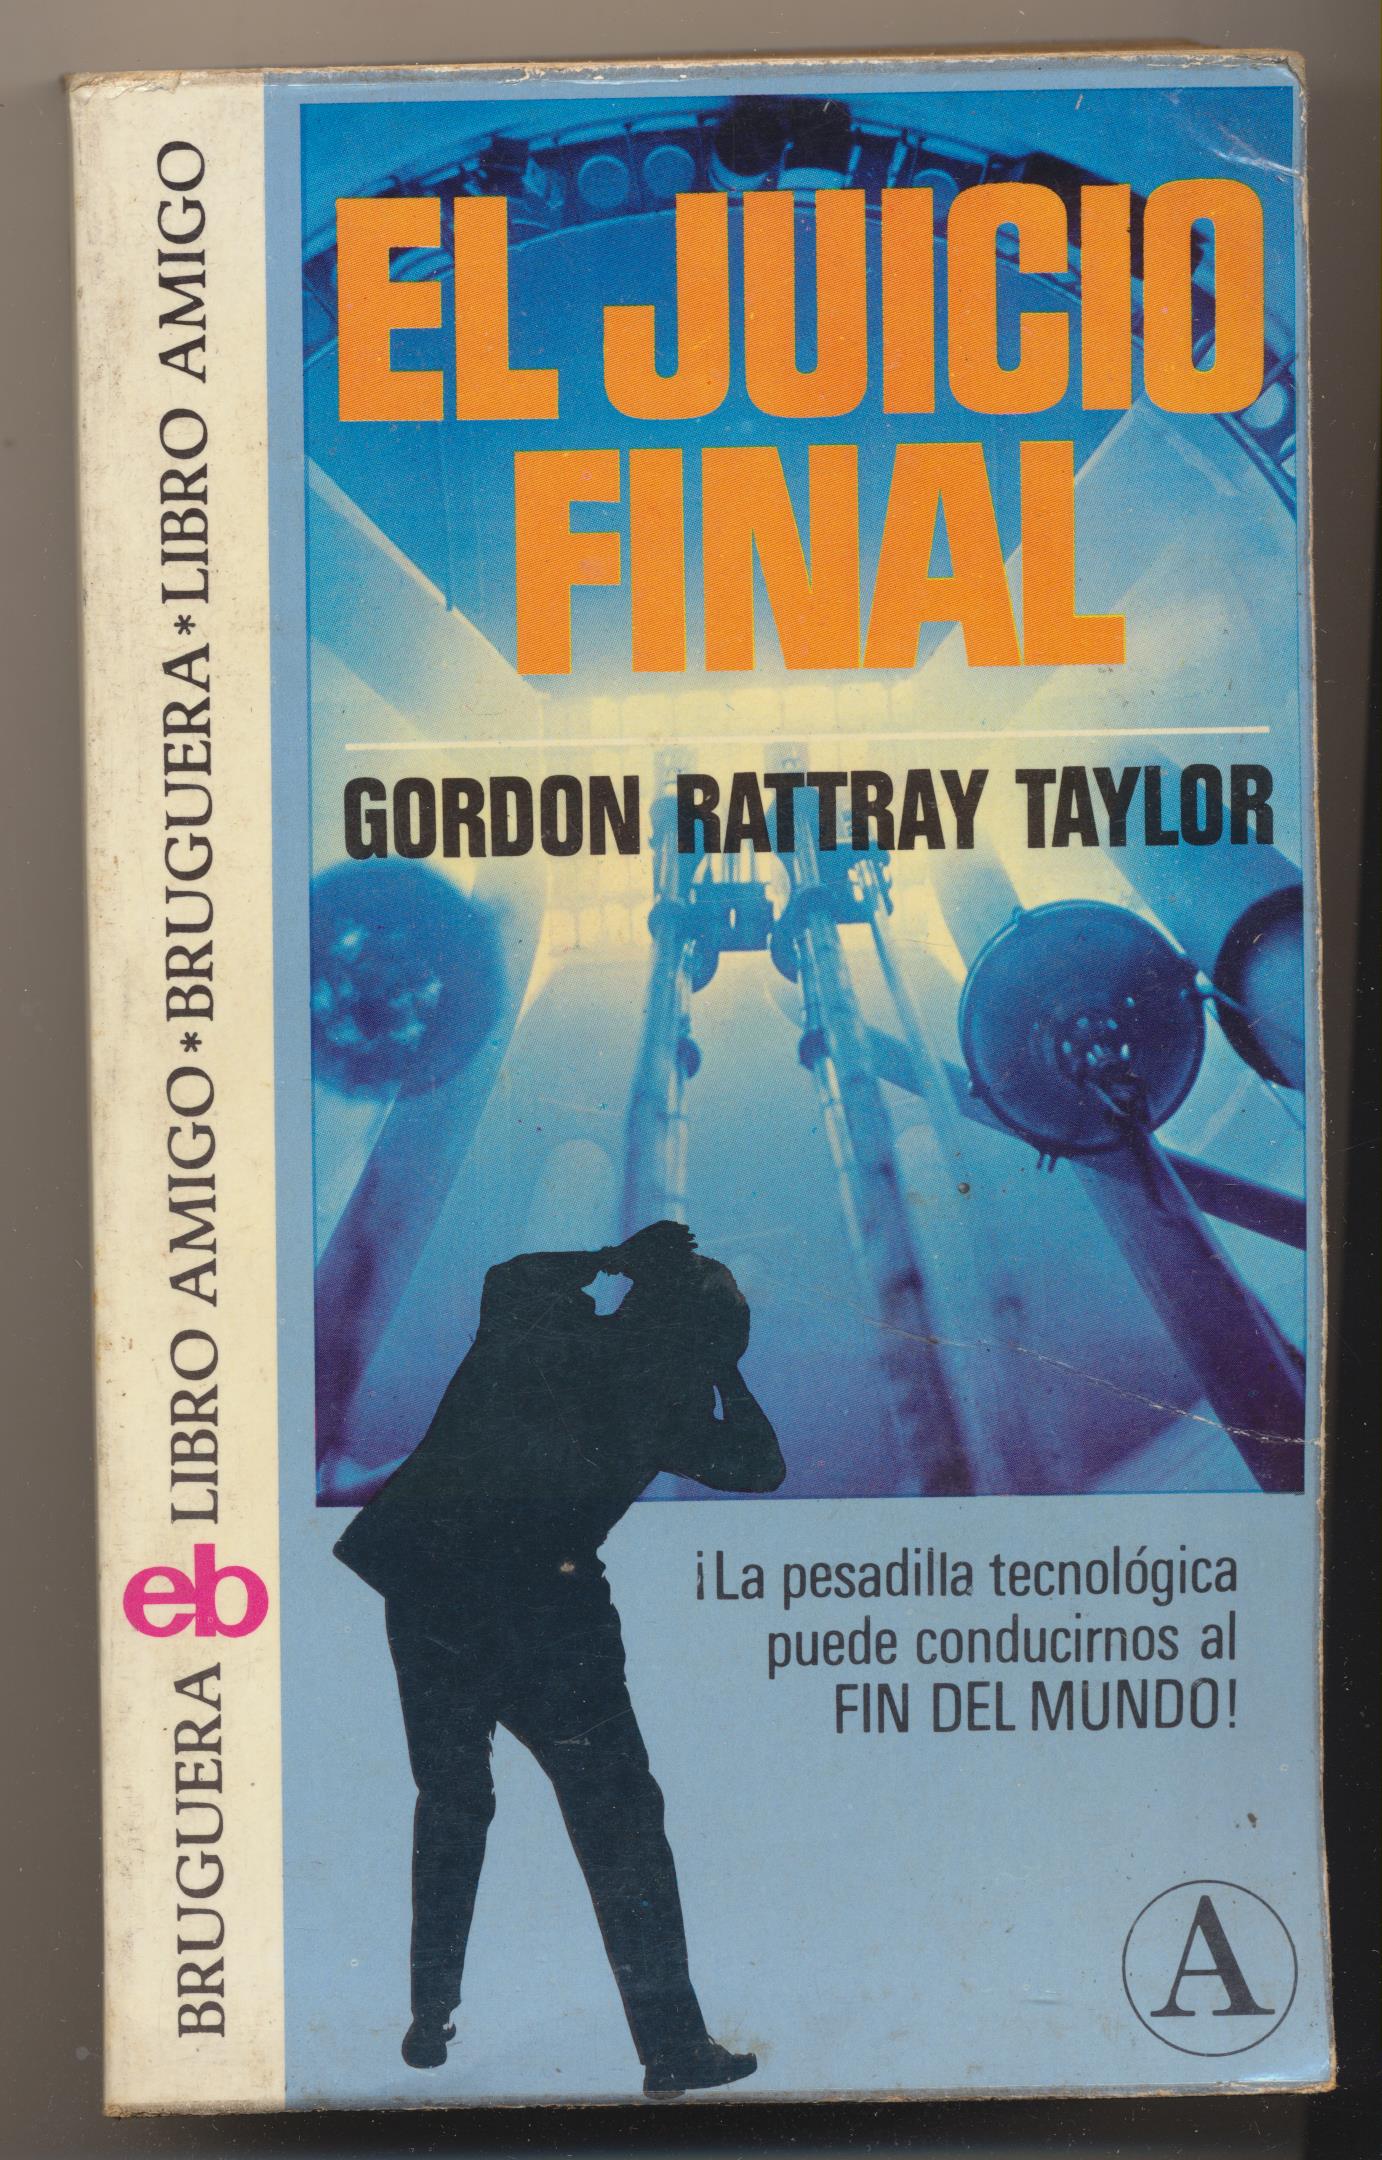 Gordon Rattray Taylor. El Juicio Final. 1ª Edición Bruguera 1979